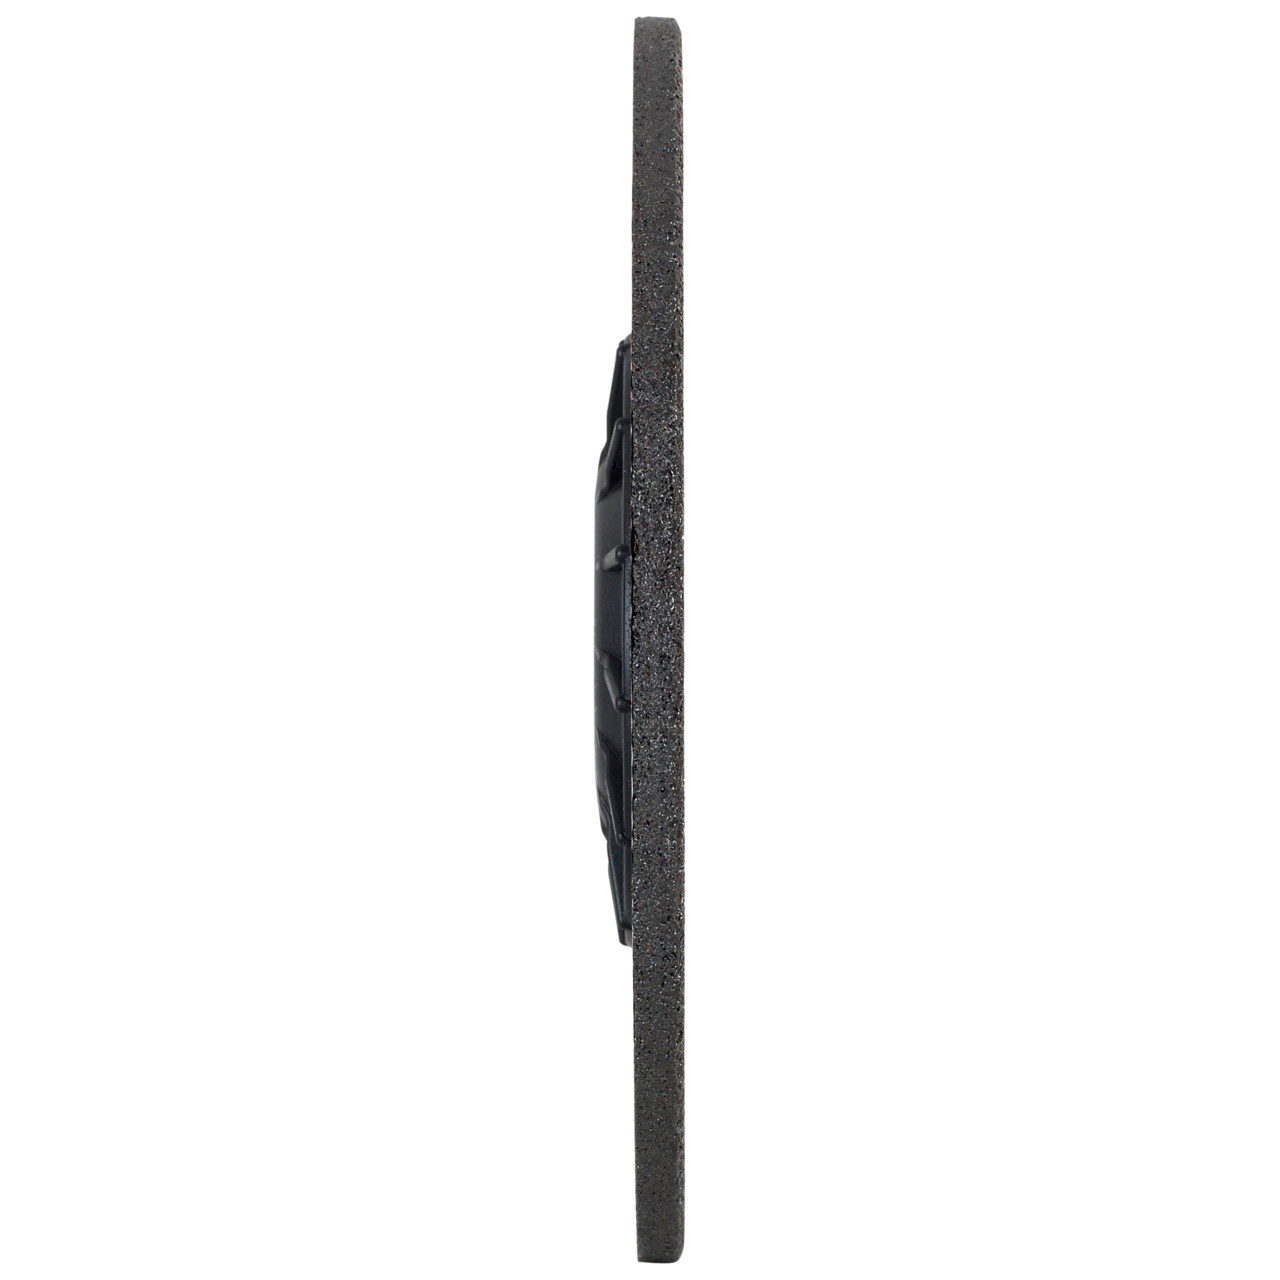 TYROLIT slijpschijf DxUxH 230x7x22,23 VIBSTAR voor roestvrij staal, vorm: 27 - offset-uitvoering, Art. 474526